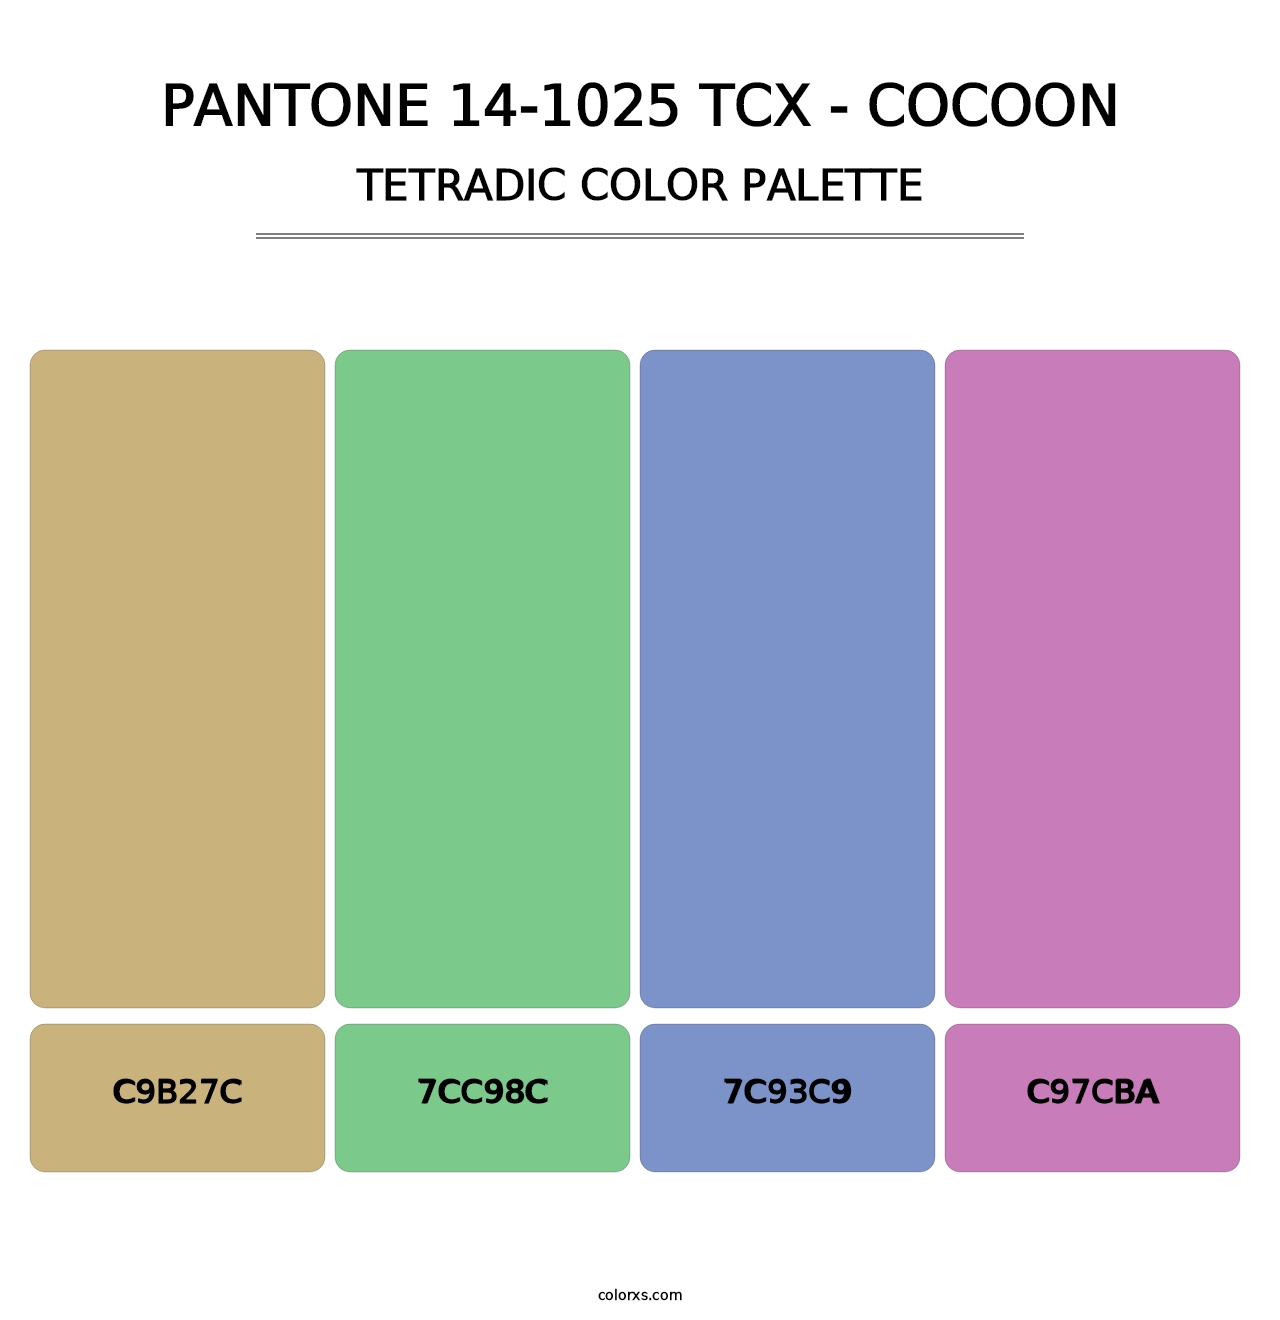 PANTONE 14-1025 TCX - Cocoon - Tetradic Color Palette